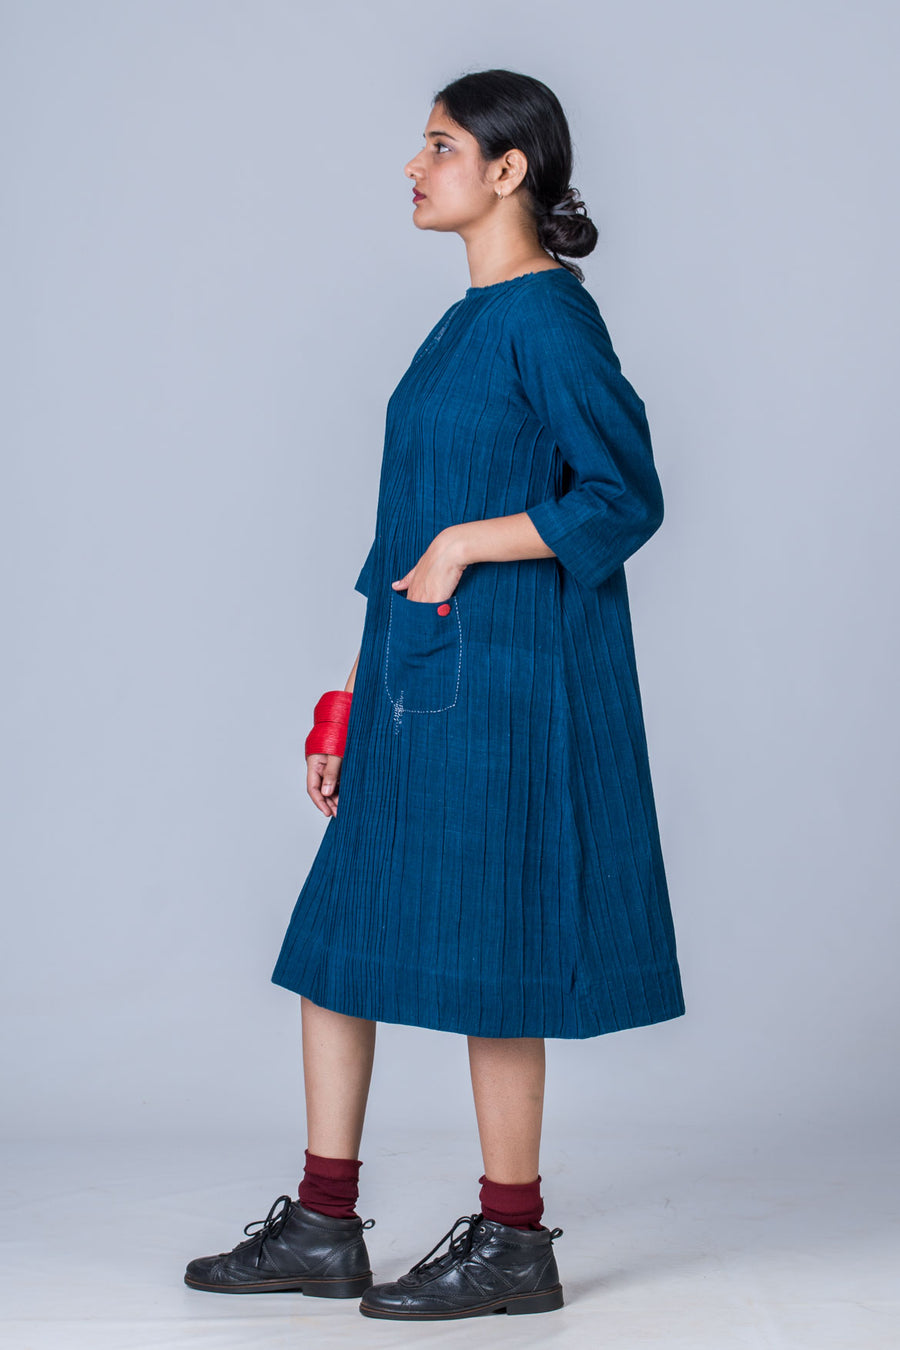 Natural Indigo Cotton pintuck dress - PARINA - Upasana Design Studio